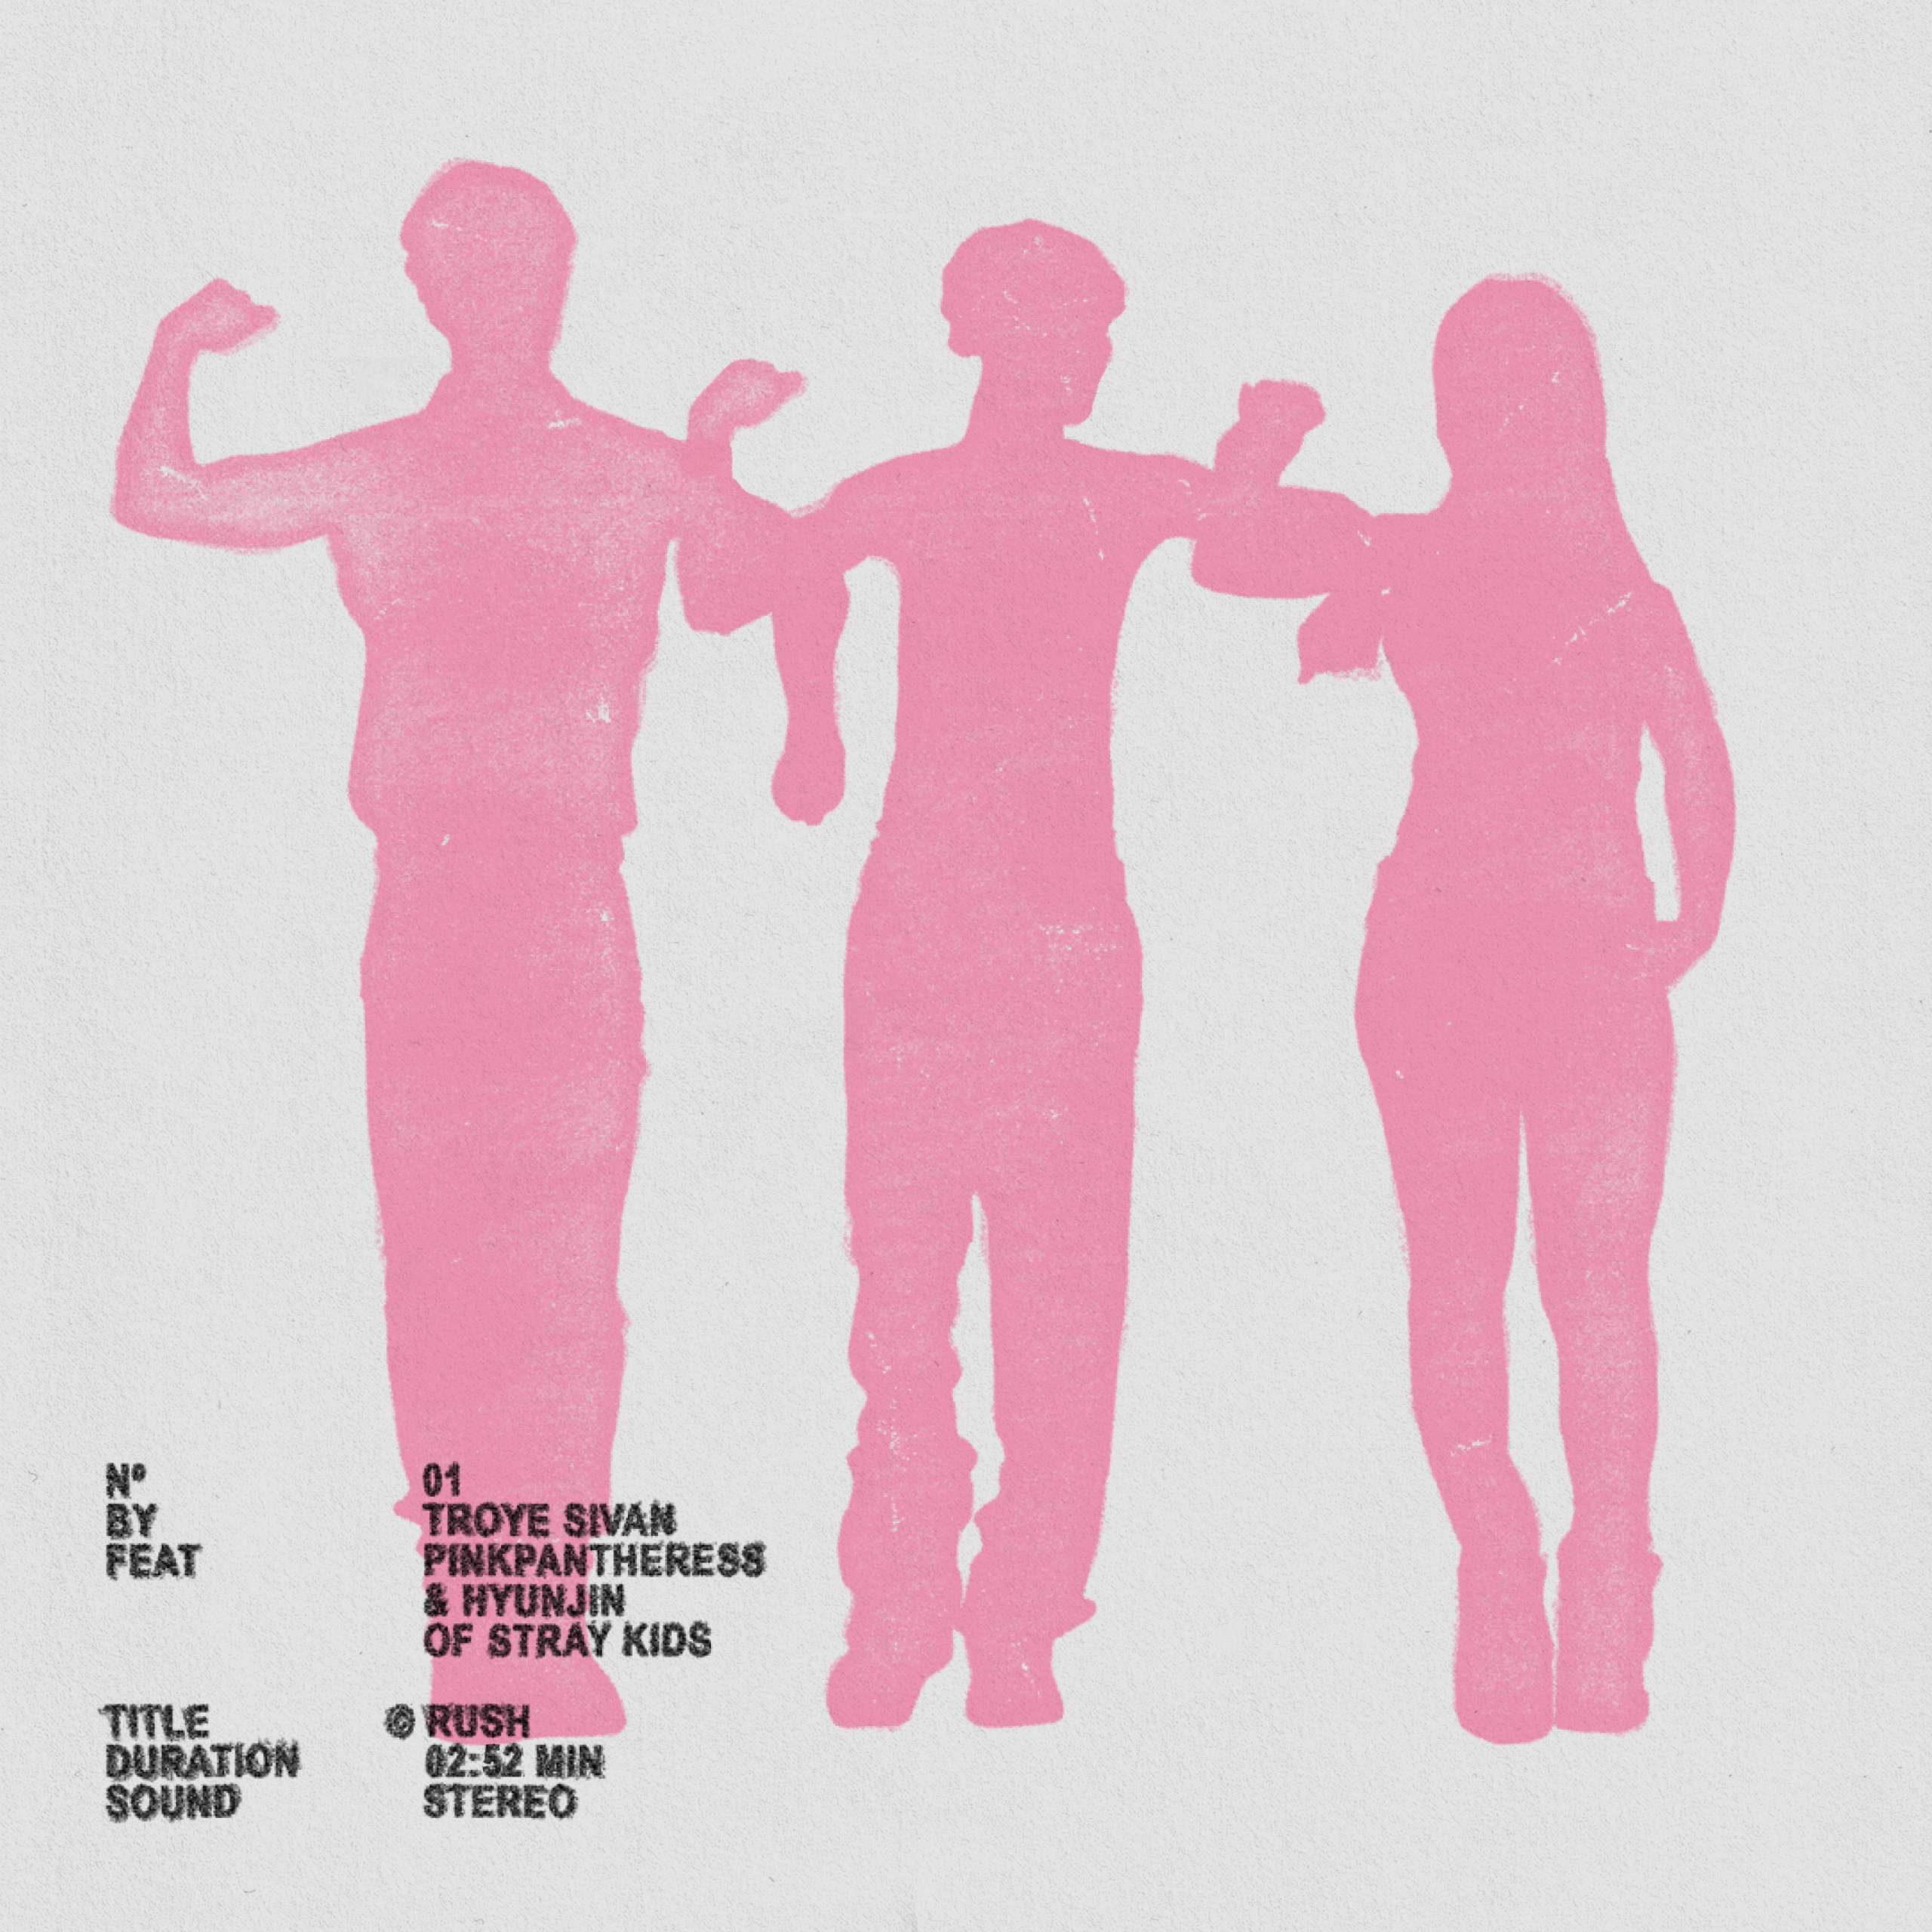 Troye Sivan Shares “Rush” (Feat. PinkPantheress & Hyunjin of Stray Kids)